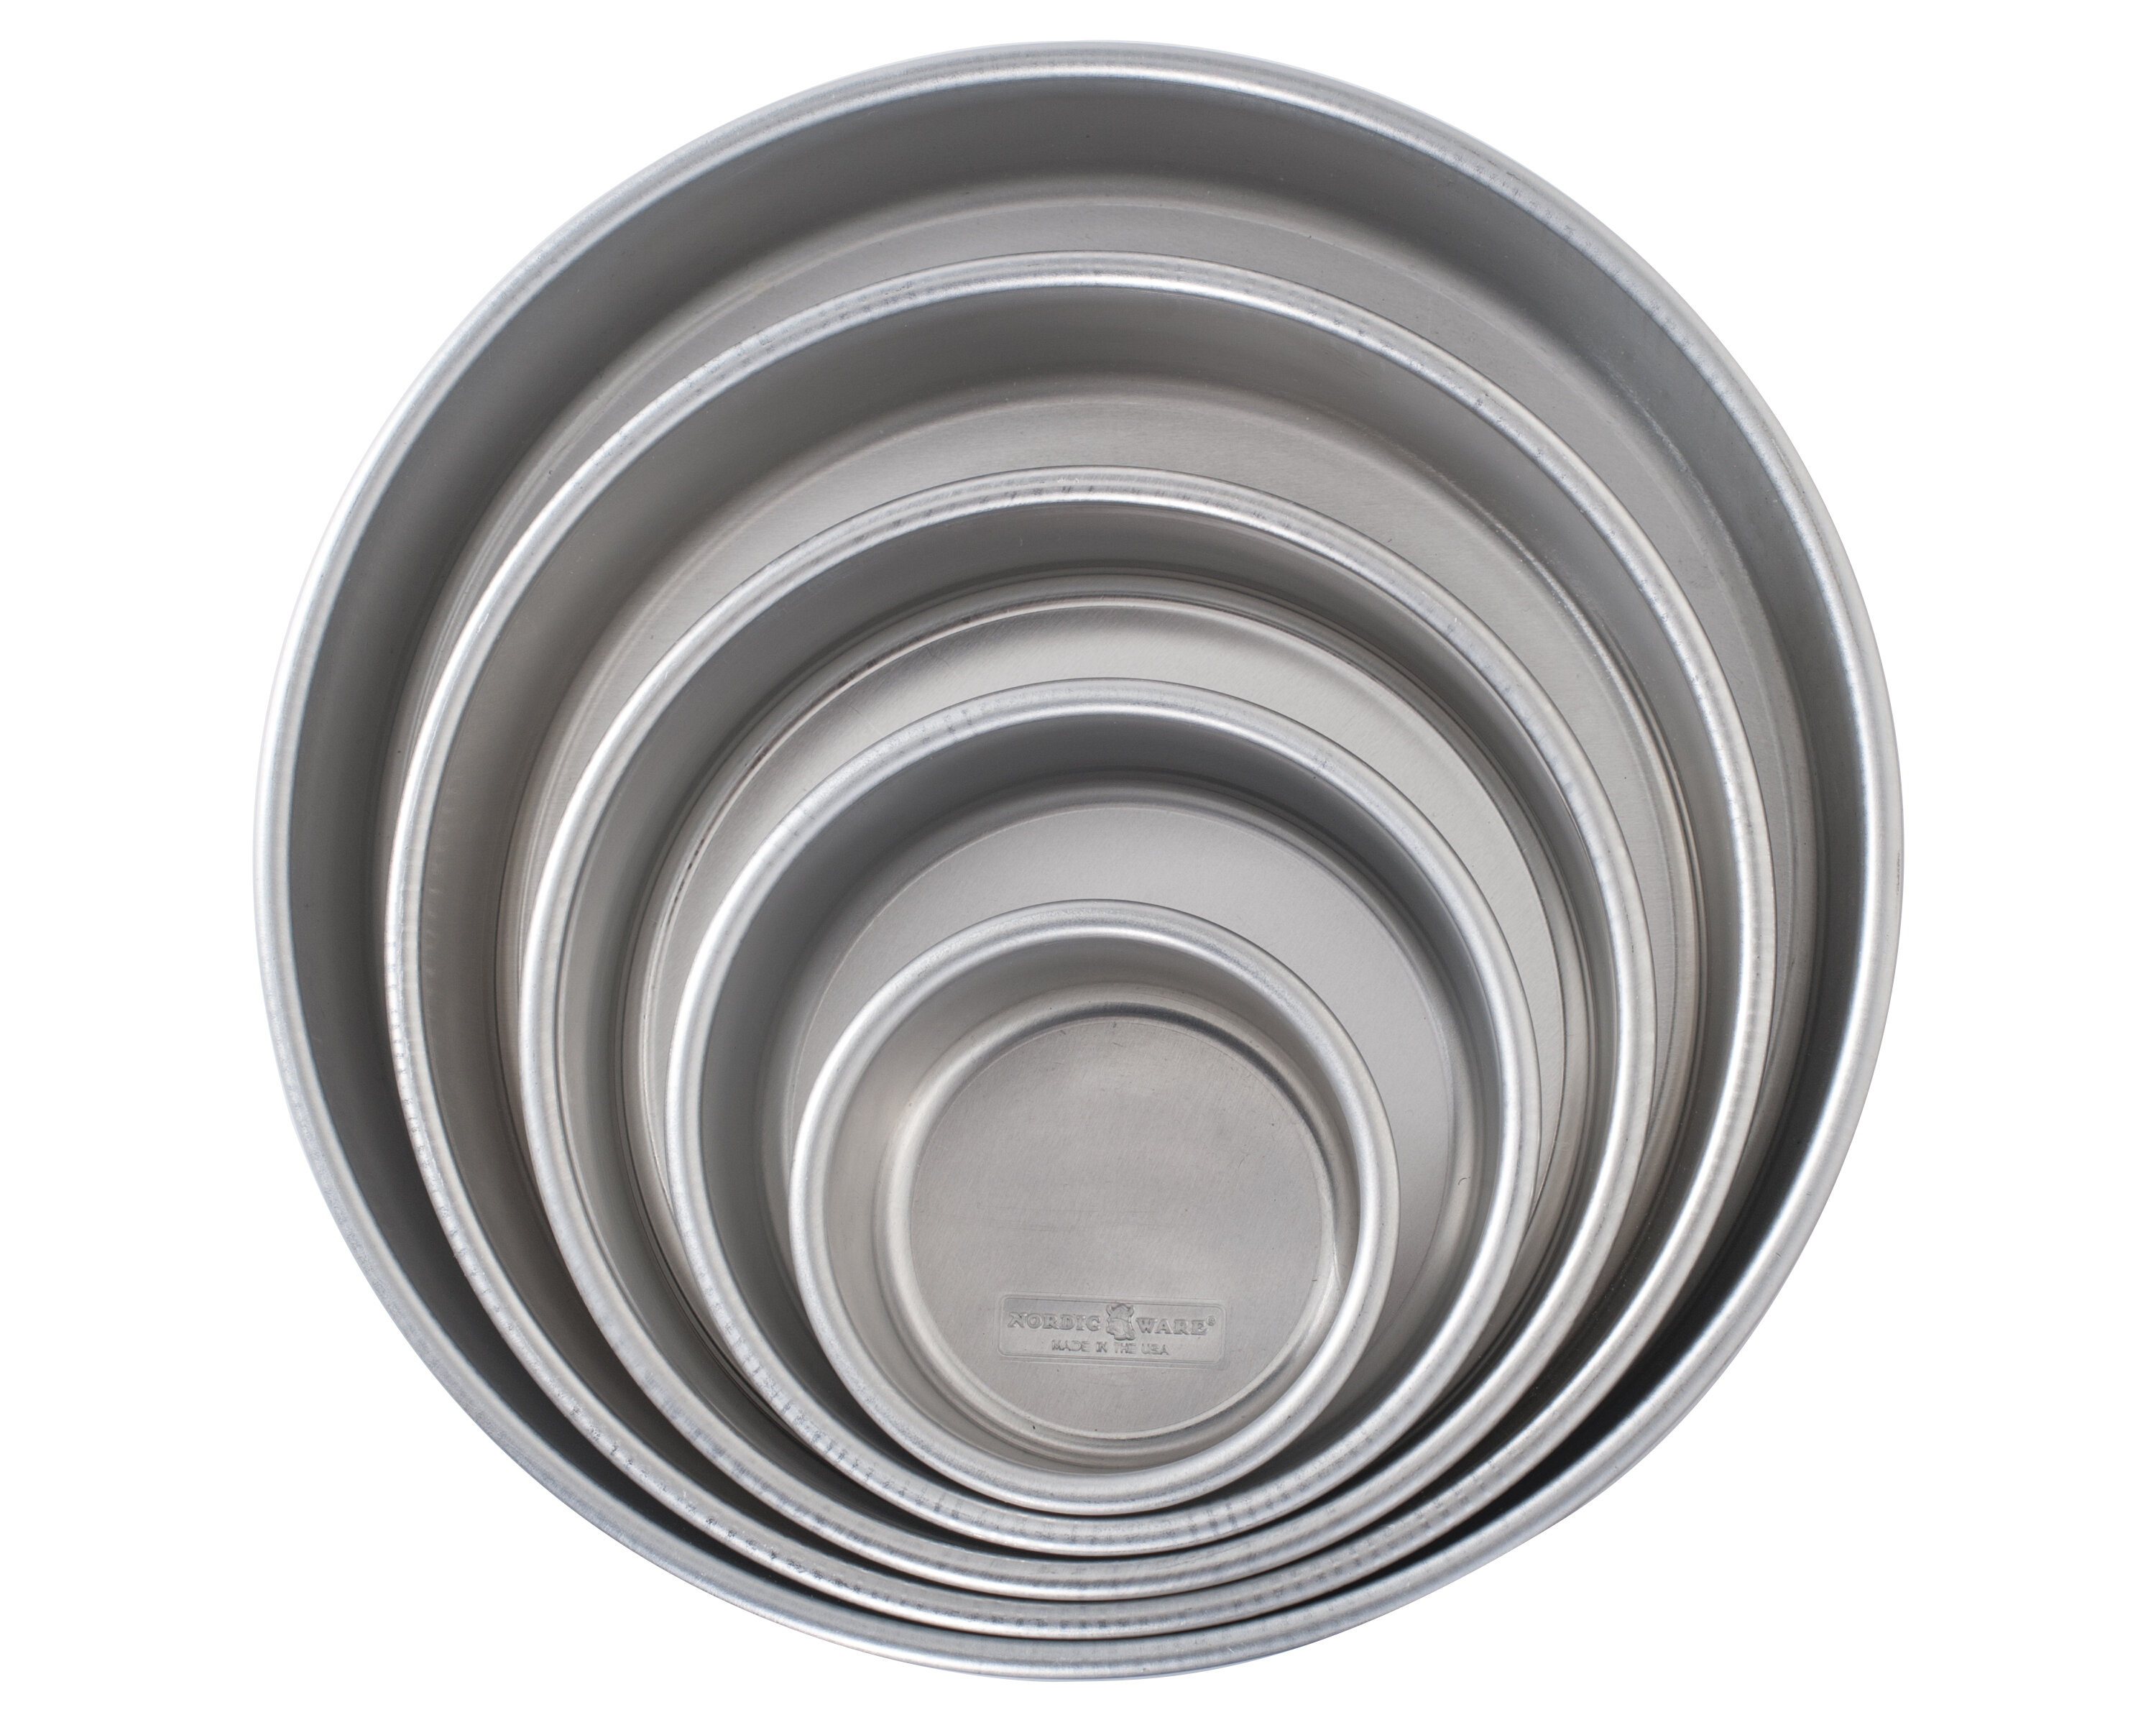 Nordic Ware Naturals Aluminum Bakeware Baking Pan, Classic, Metal Covered